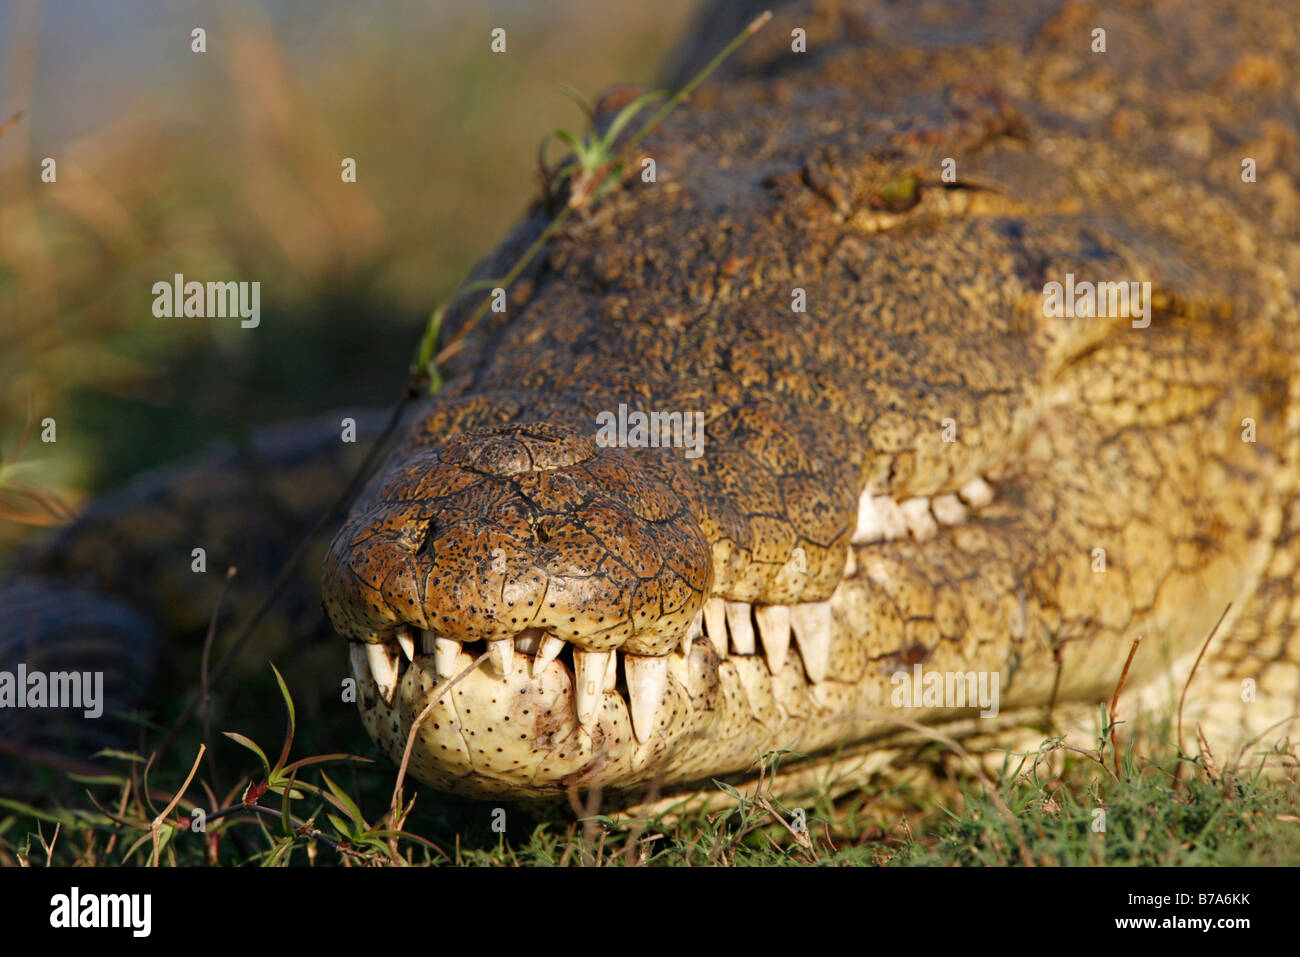 Retrato de un cocodrilo del Nilo asoleándose con dientes en un enfoque nítido Foto de stock